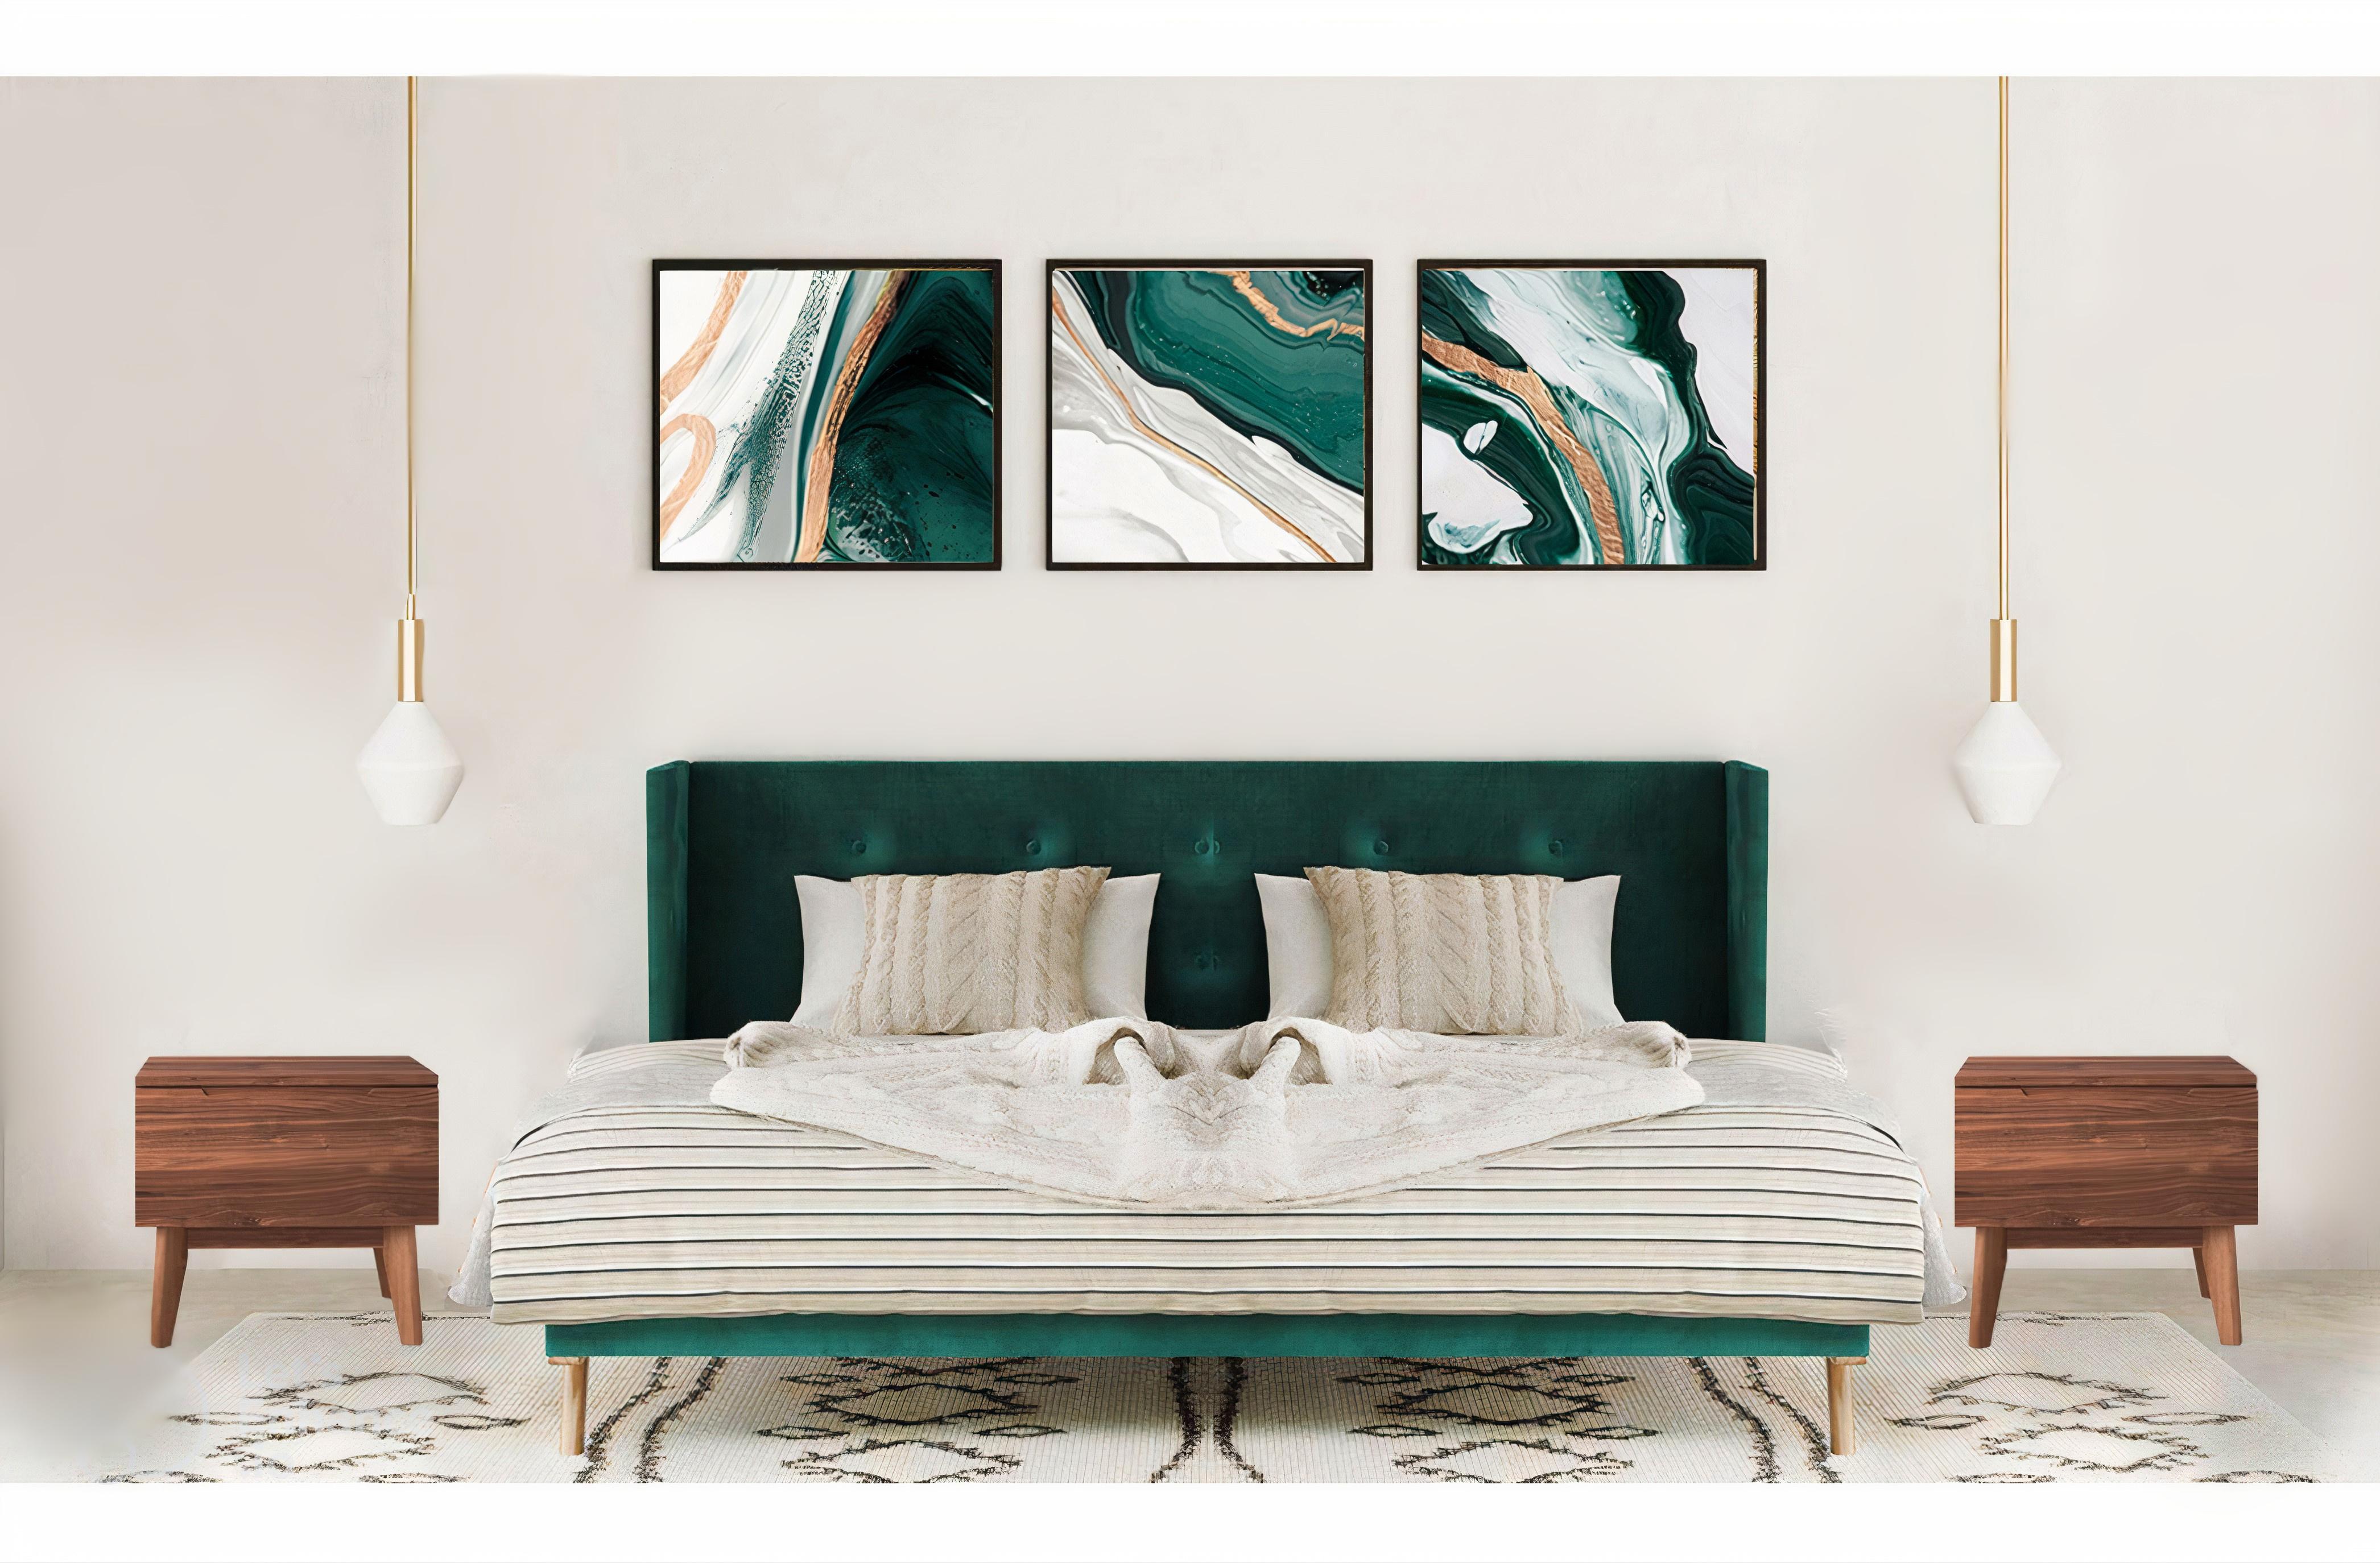 

    
 Order  Green Fabric & Brown Queen Panel Bedroom Set 5Pcs by VIG Nova Domus Durango
